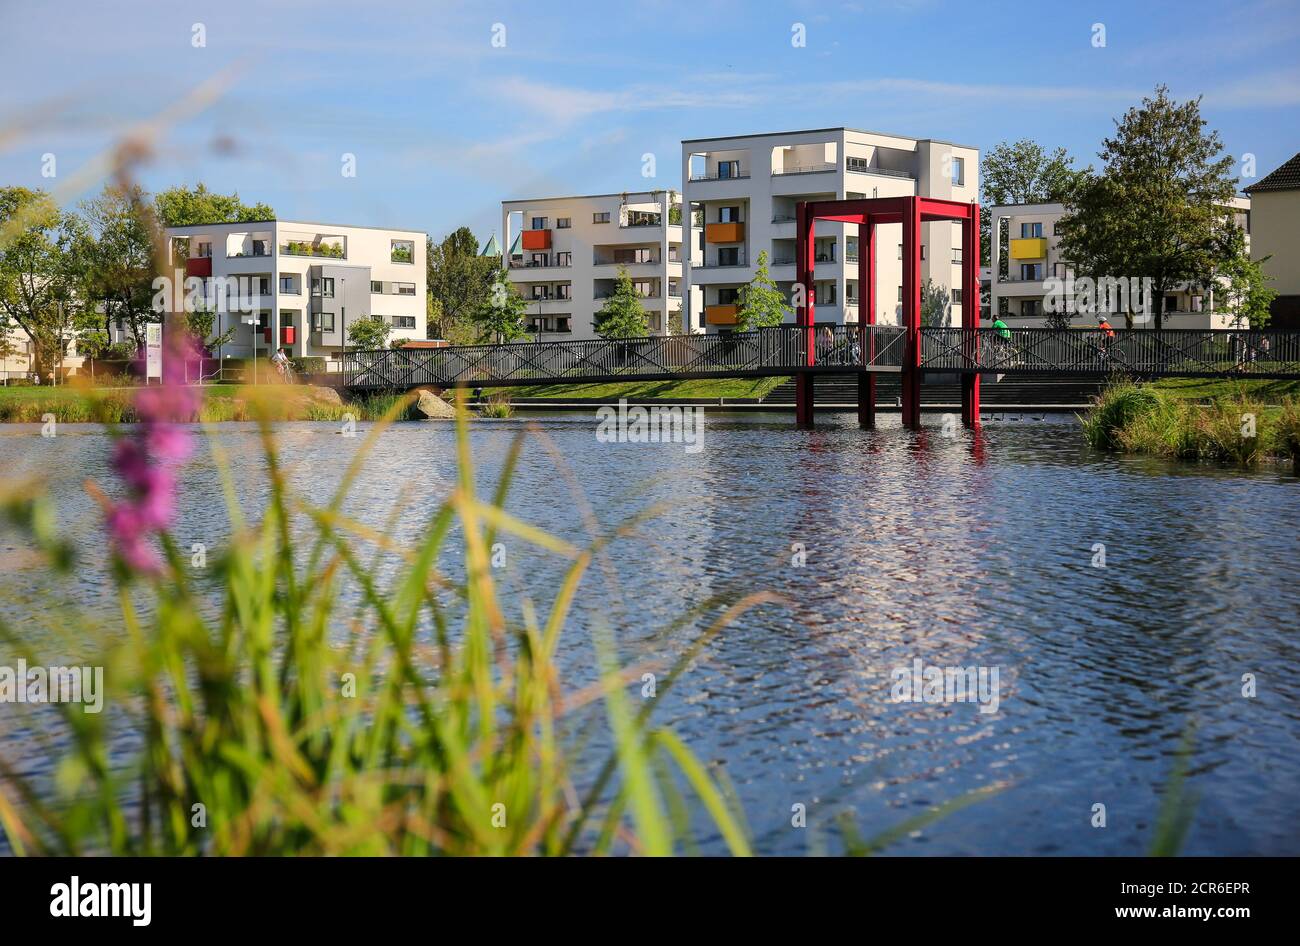 Essen, Nordrhein-Westfalen, Ruhrgebiet, Deutschland, Stadtentwicklungsprojekt Niederfeldsee, neues Baugebiet mit einem neu geschaffenen See in der Stockfoto